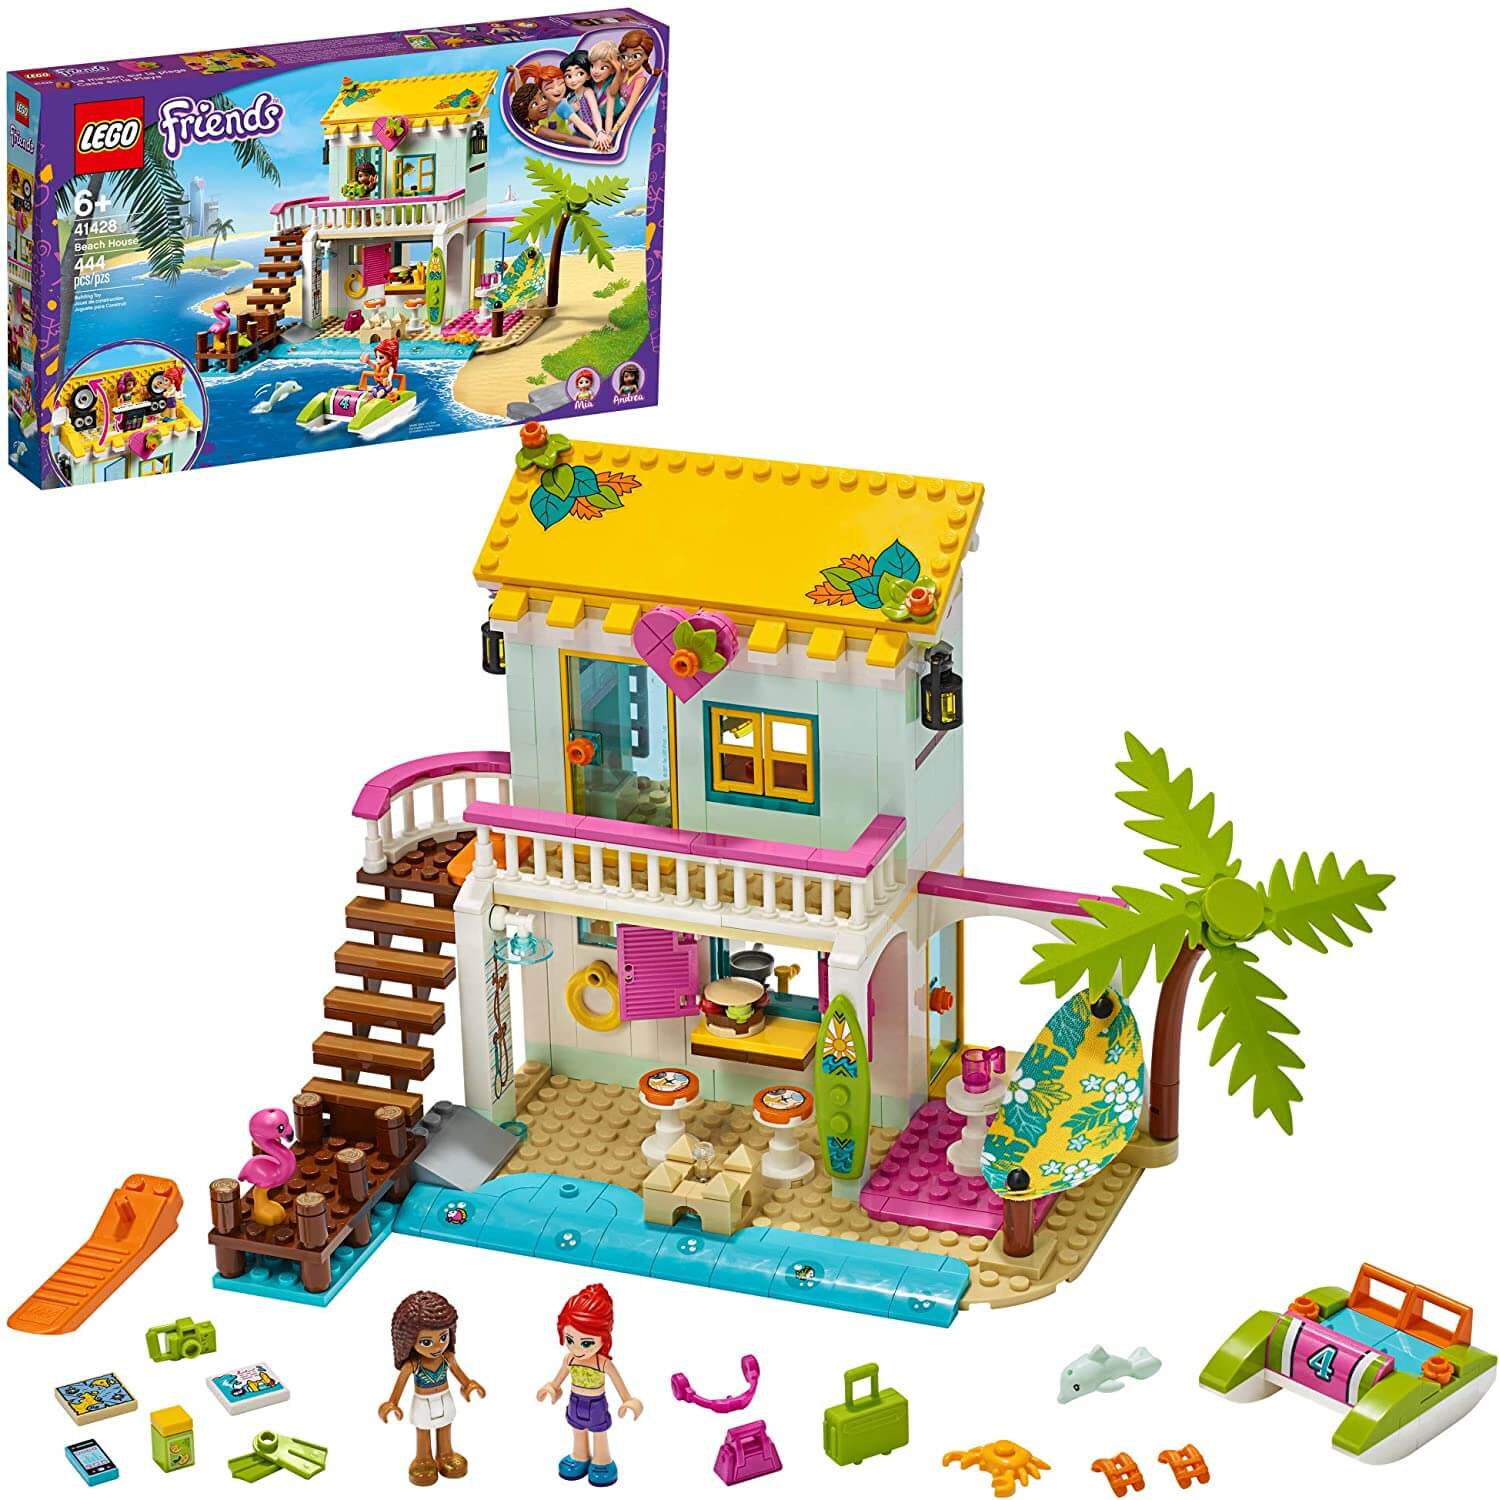 Конструктор Пляжный домик 41428 LEGO Friends конструктор lego friends 41037 пляжный домик стефани 369 дет